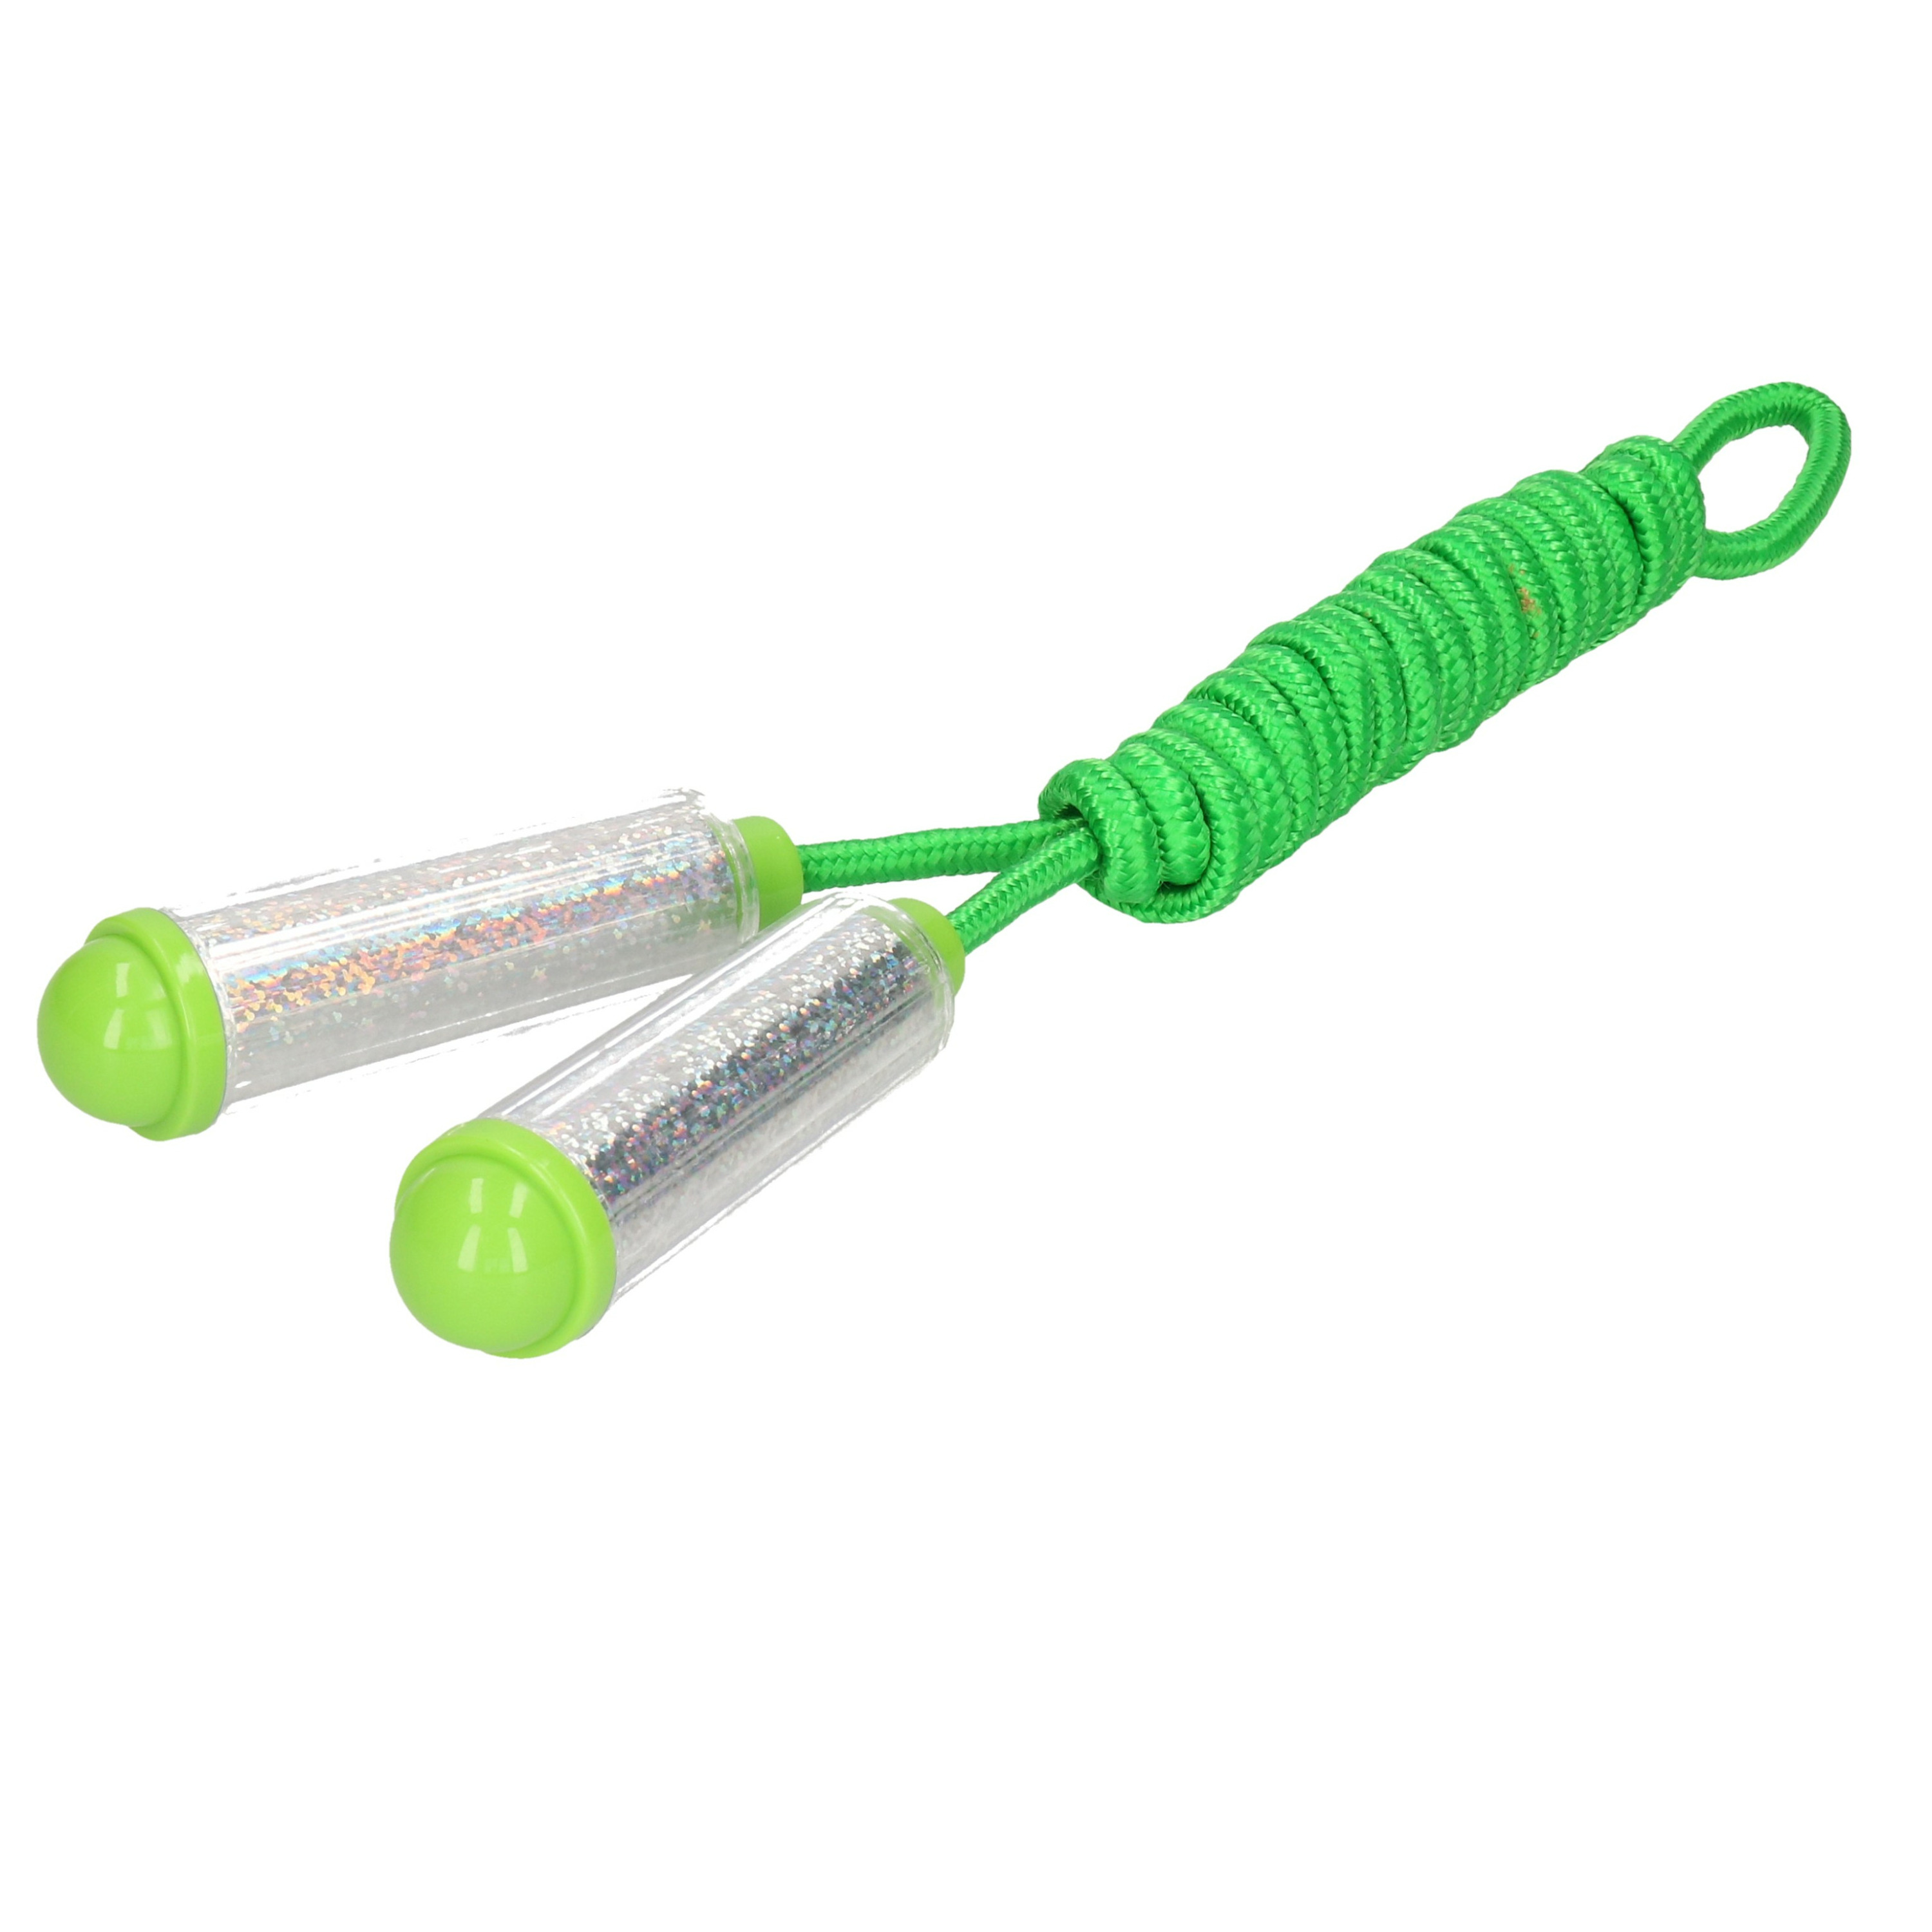 Springtouw - met kunststof handvatten - groen/zilver - 210 cm - speelgoed